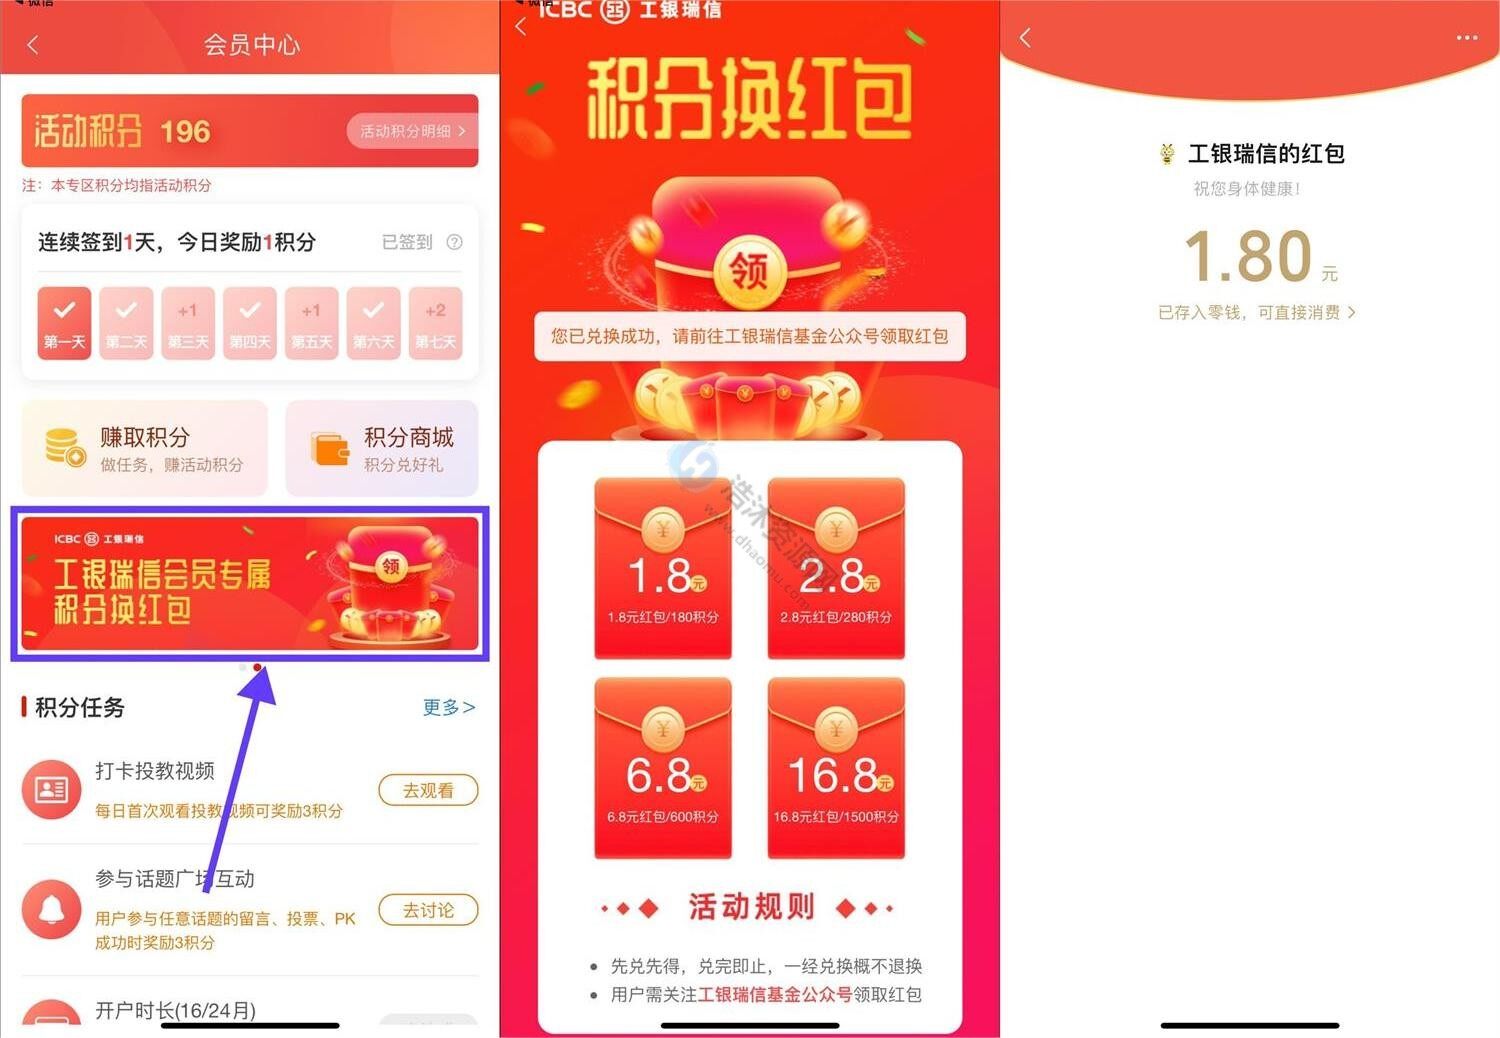 中国工商银行工银瑞信积分兑换1.8元微信现金红包